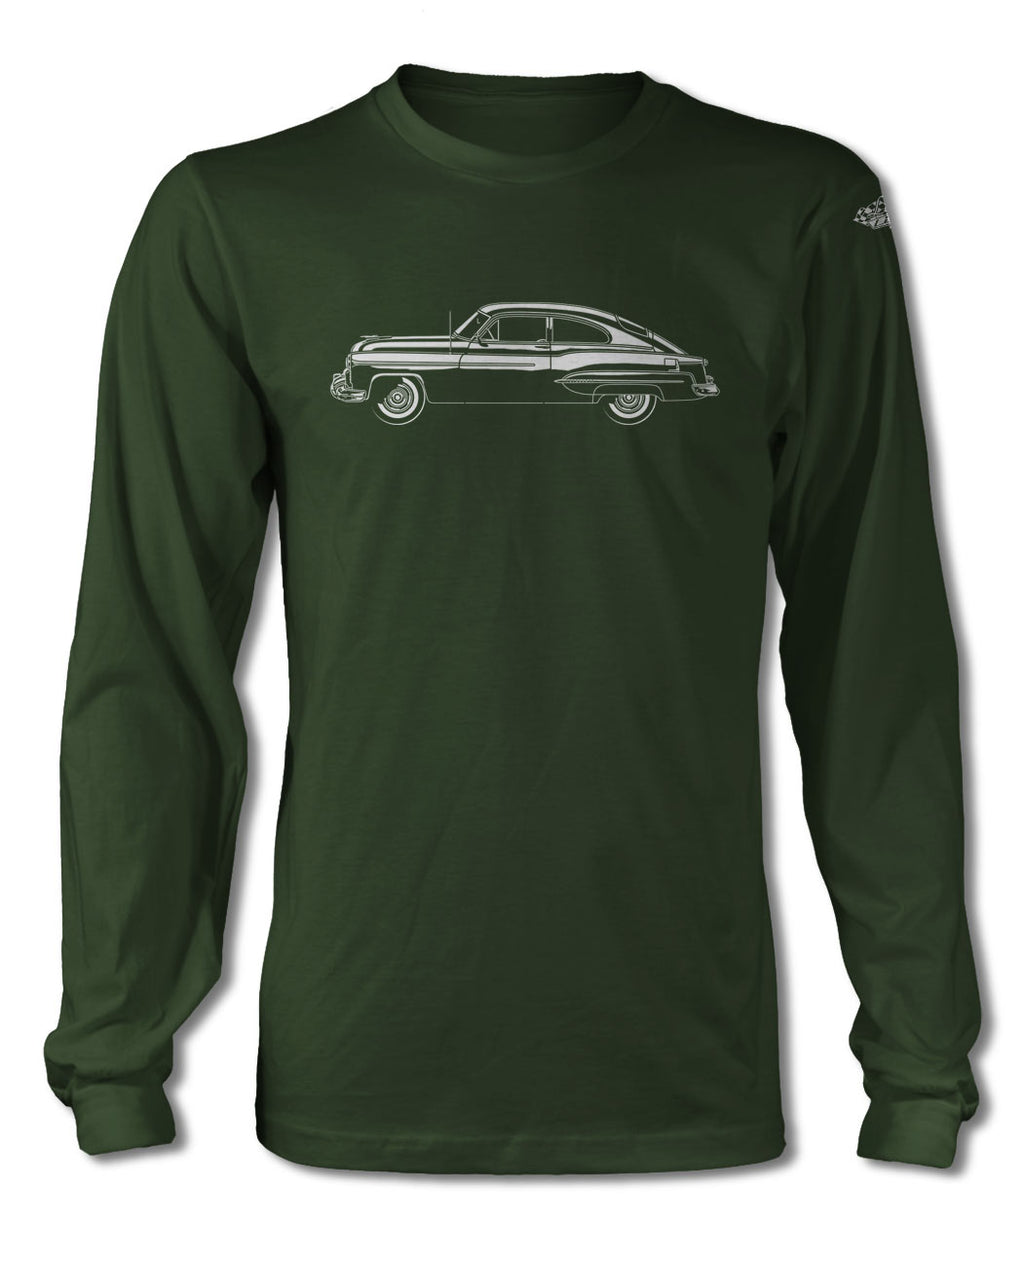 1950 Oldsmobile 98 Deluxe Club Sedan T-Shirt - Long Sleeves - Side View